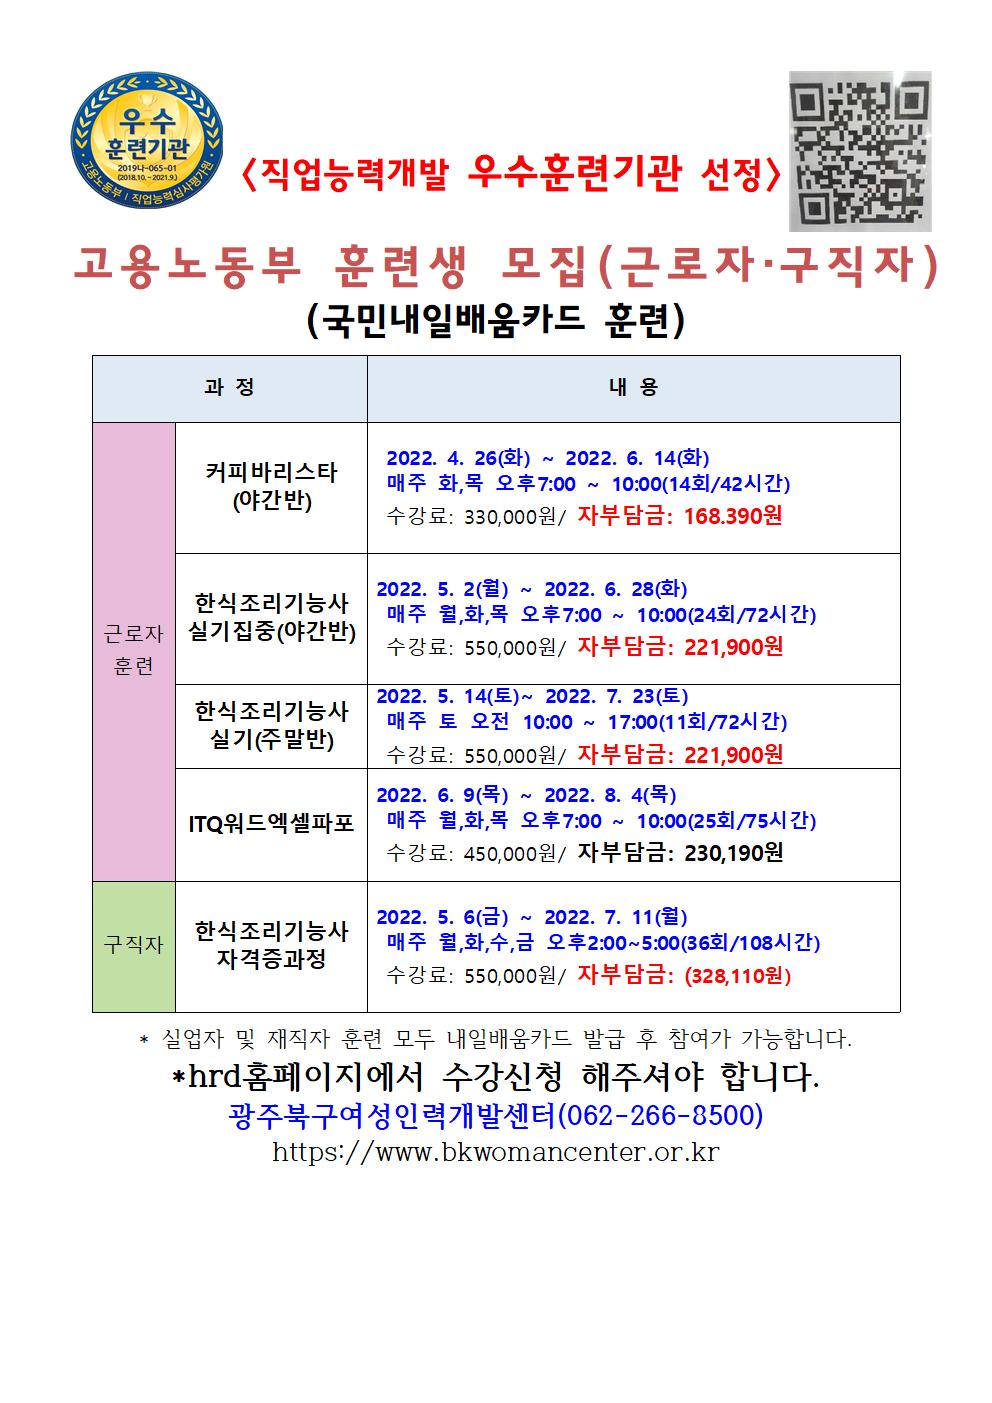 국민내일배움카드 강좌 개강안내4월001